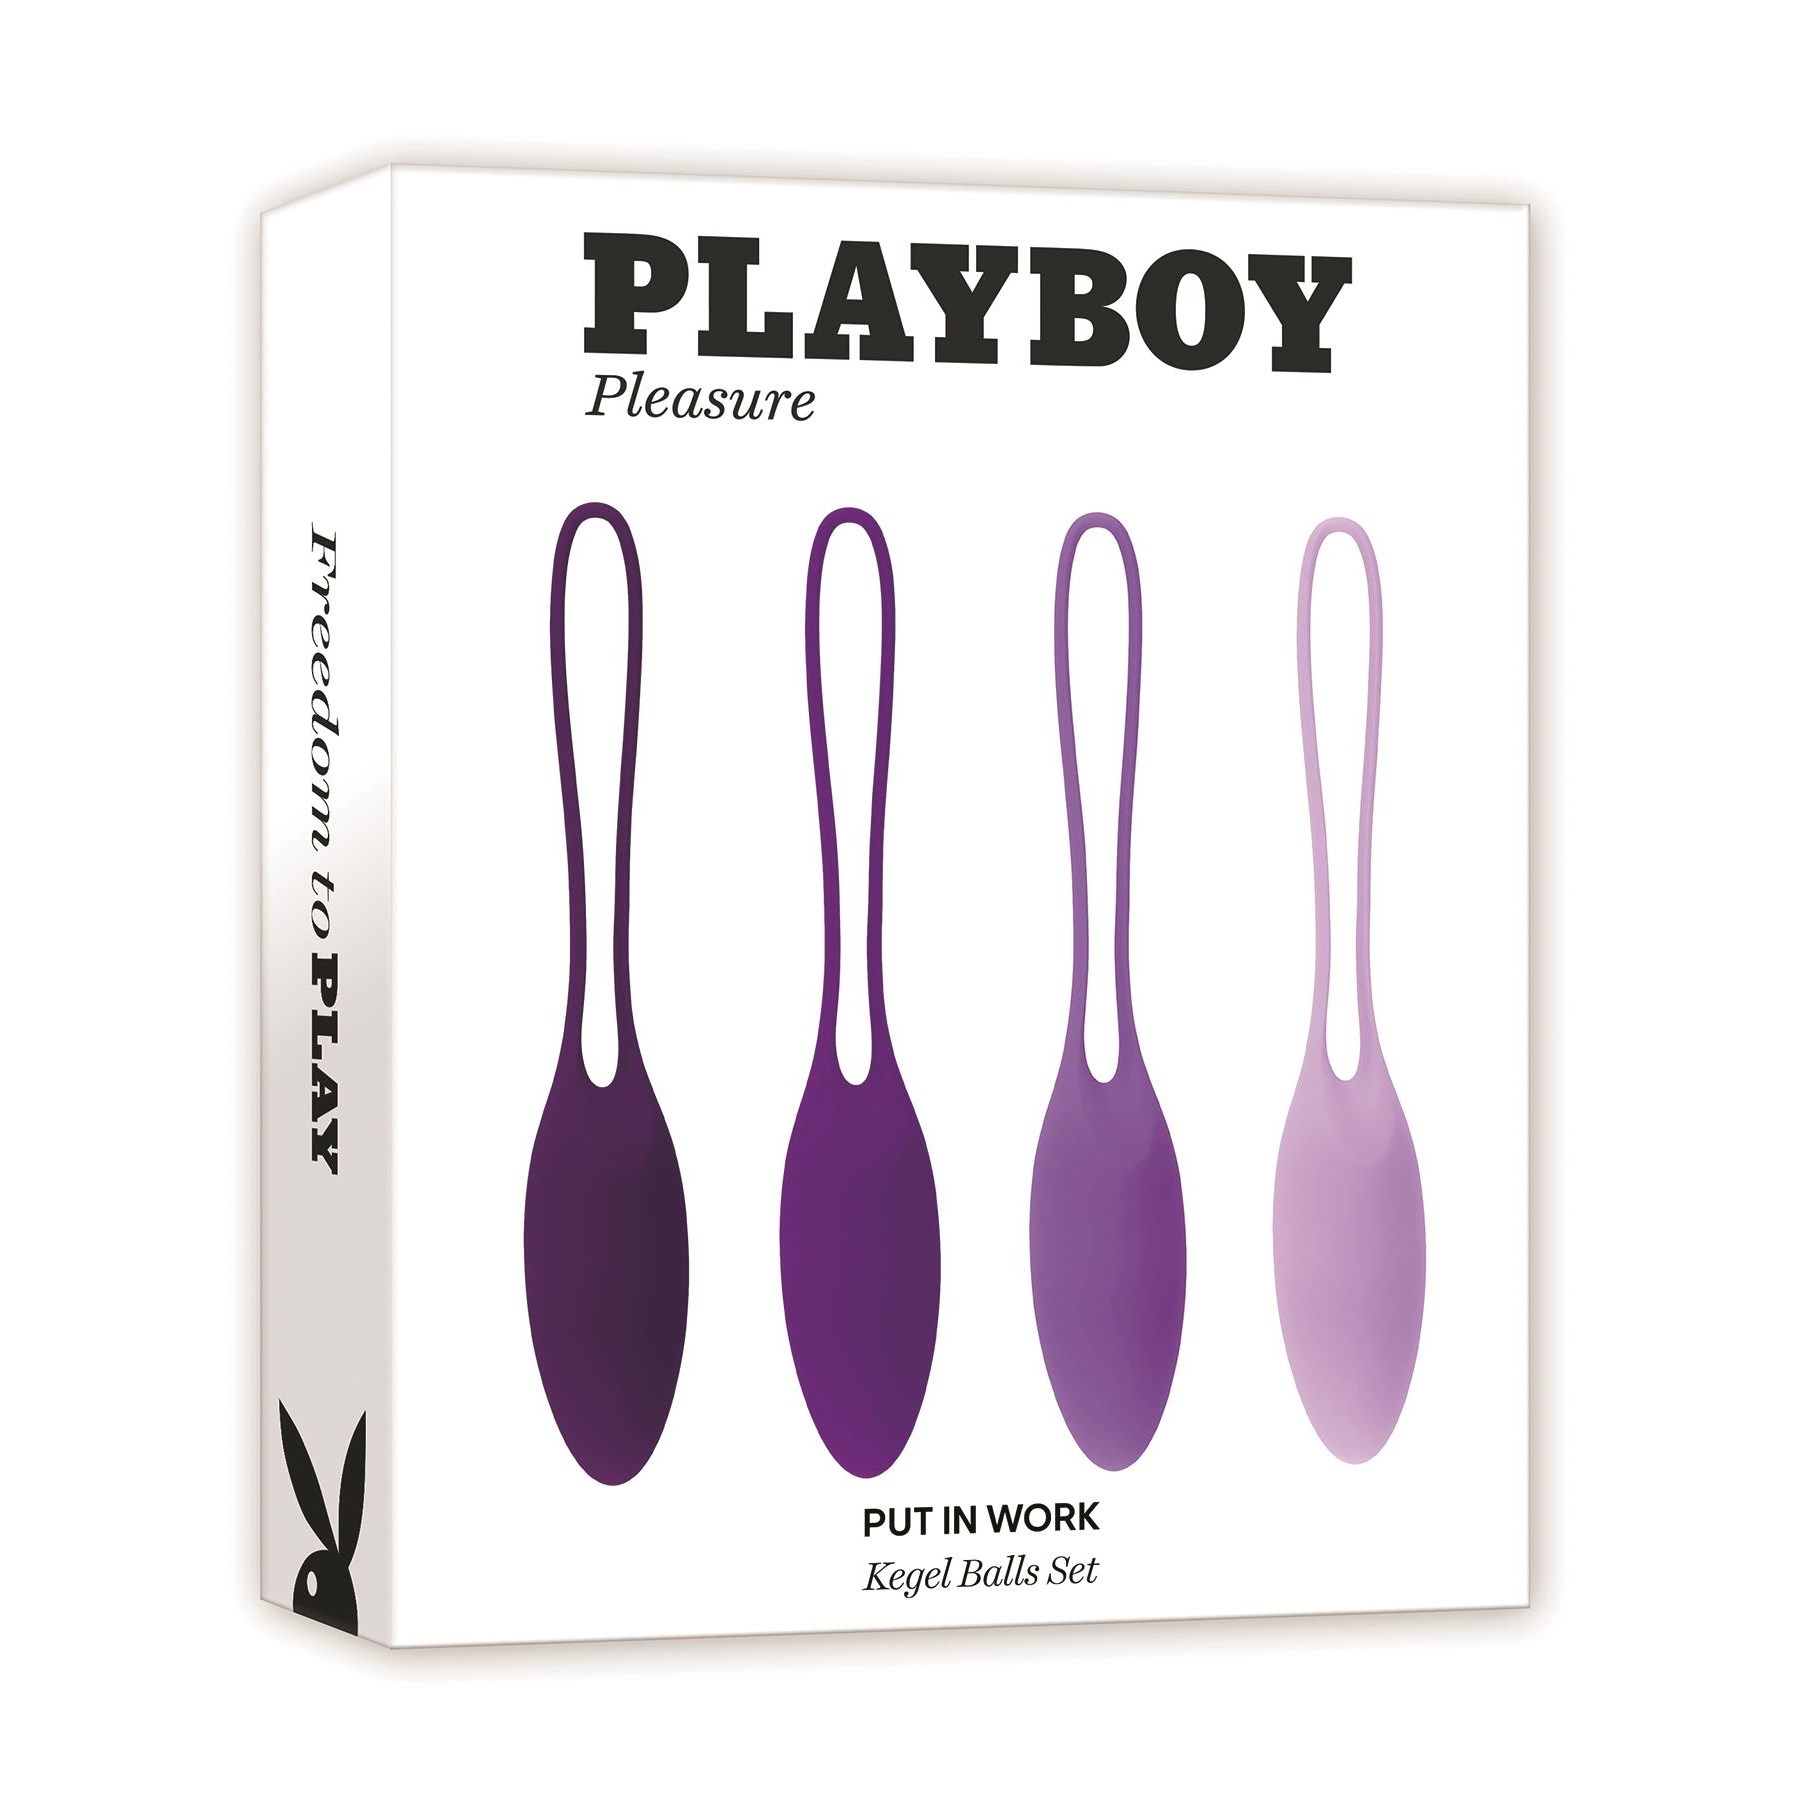 Playboy Pleasure Put In Work Kegel Training Set - Packaging